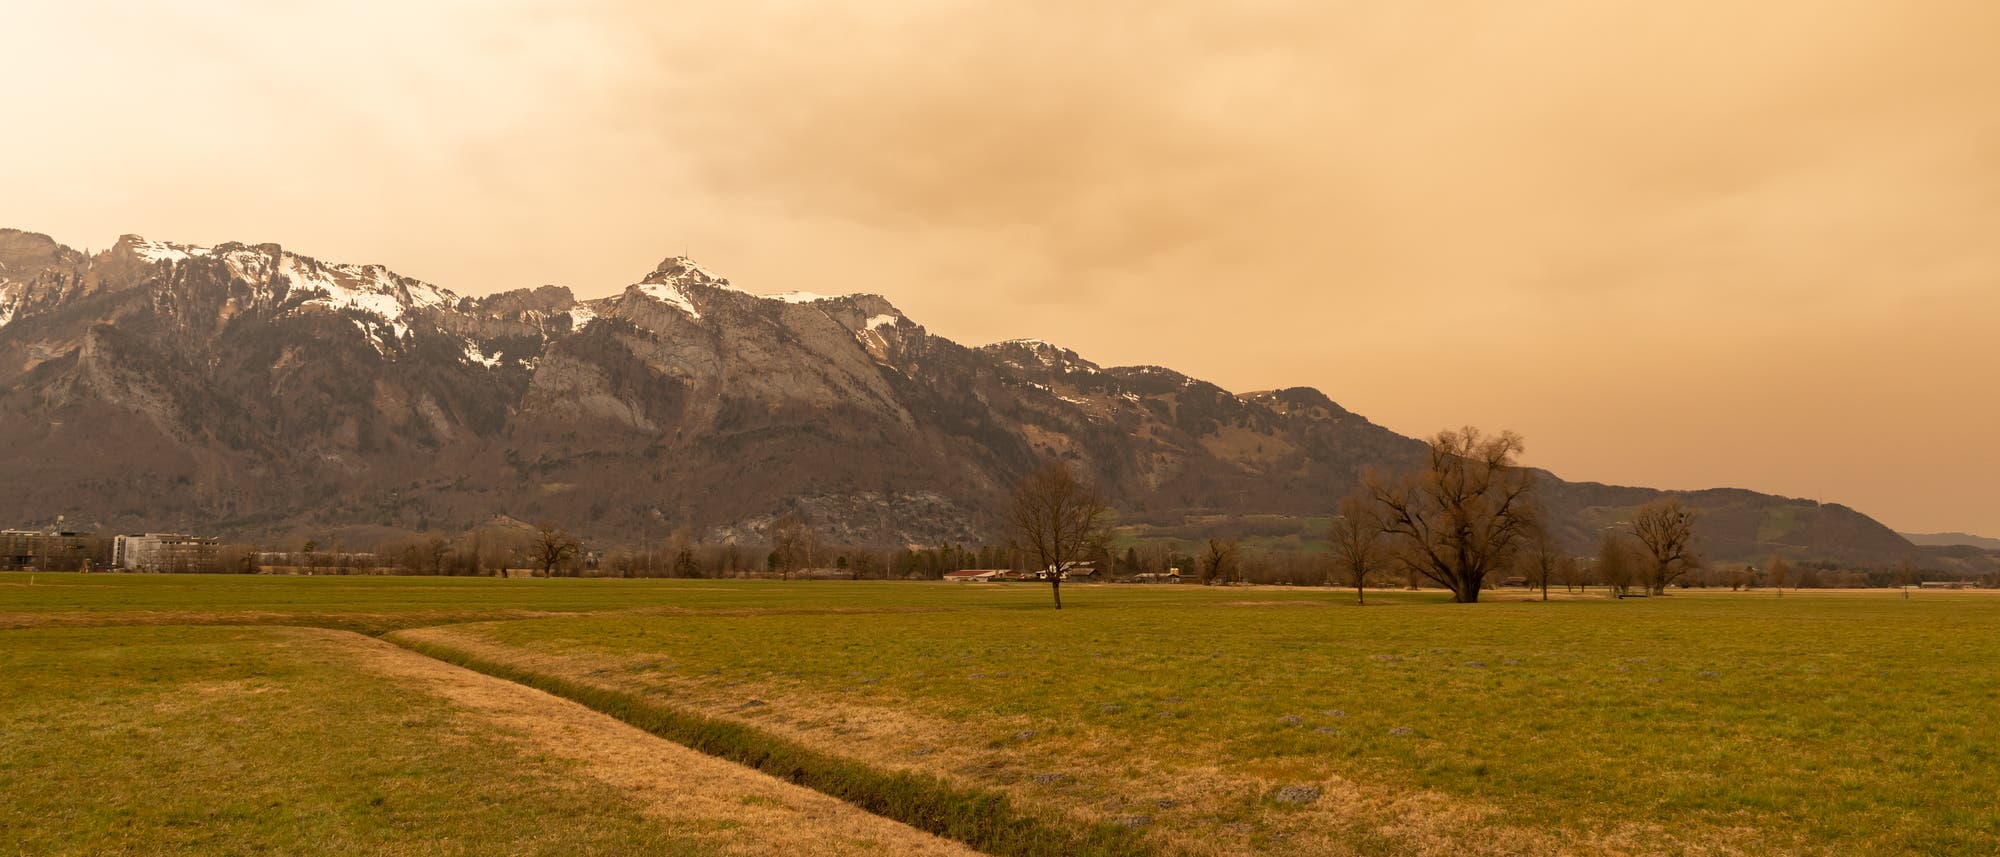 Saharastaub färbt den Himmel über dem Rheintal in Liechtenstein gelblich.